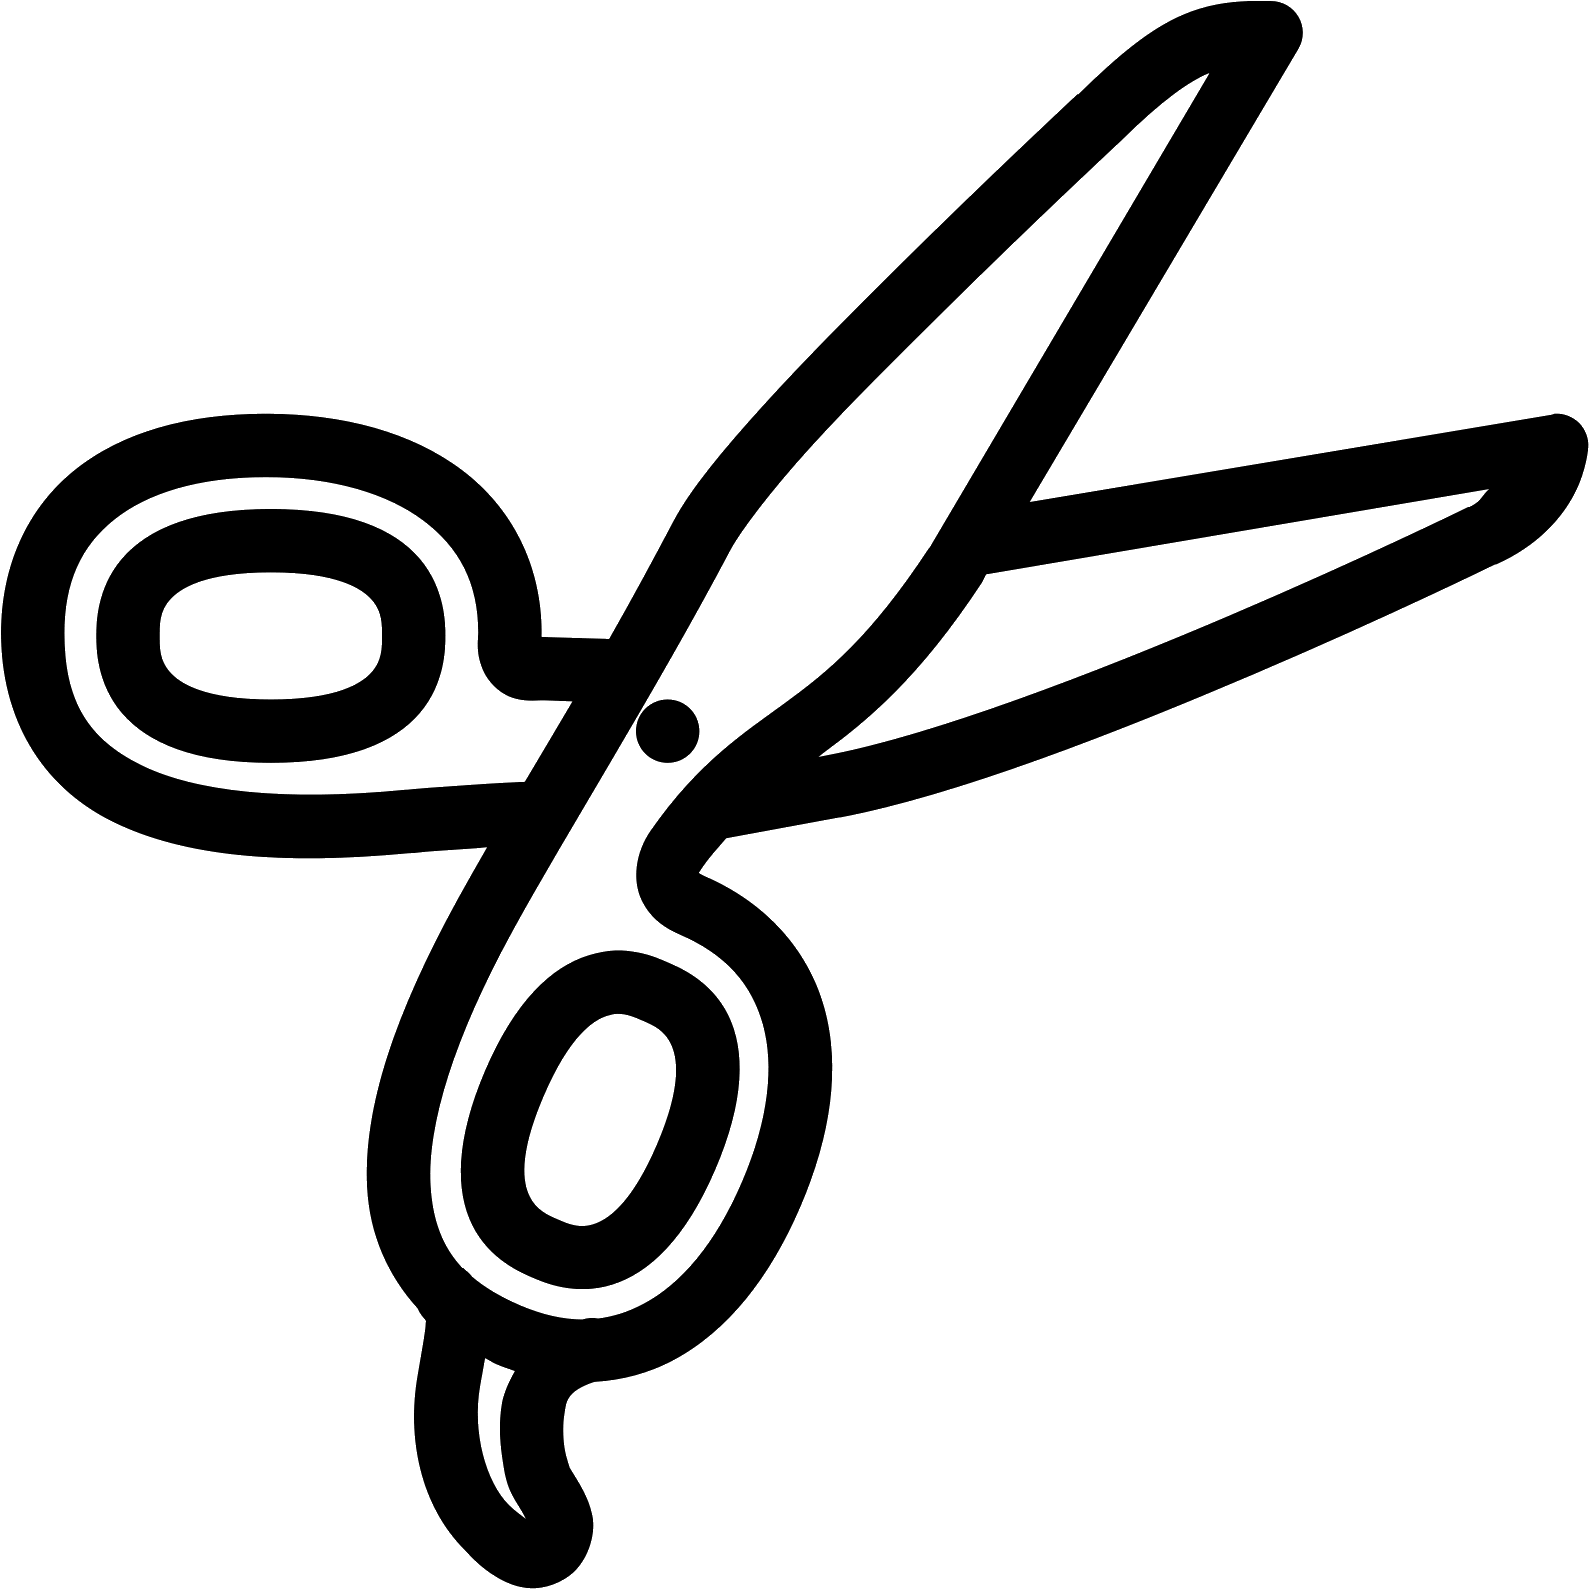 Barber Scissors Icon - รูป วาด กรรไกร ตัดผม (1600x1600)